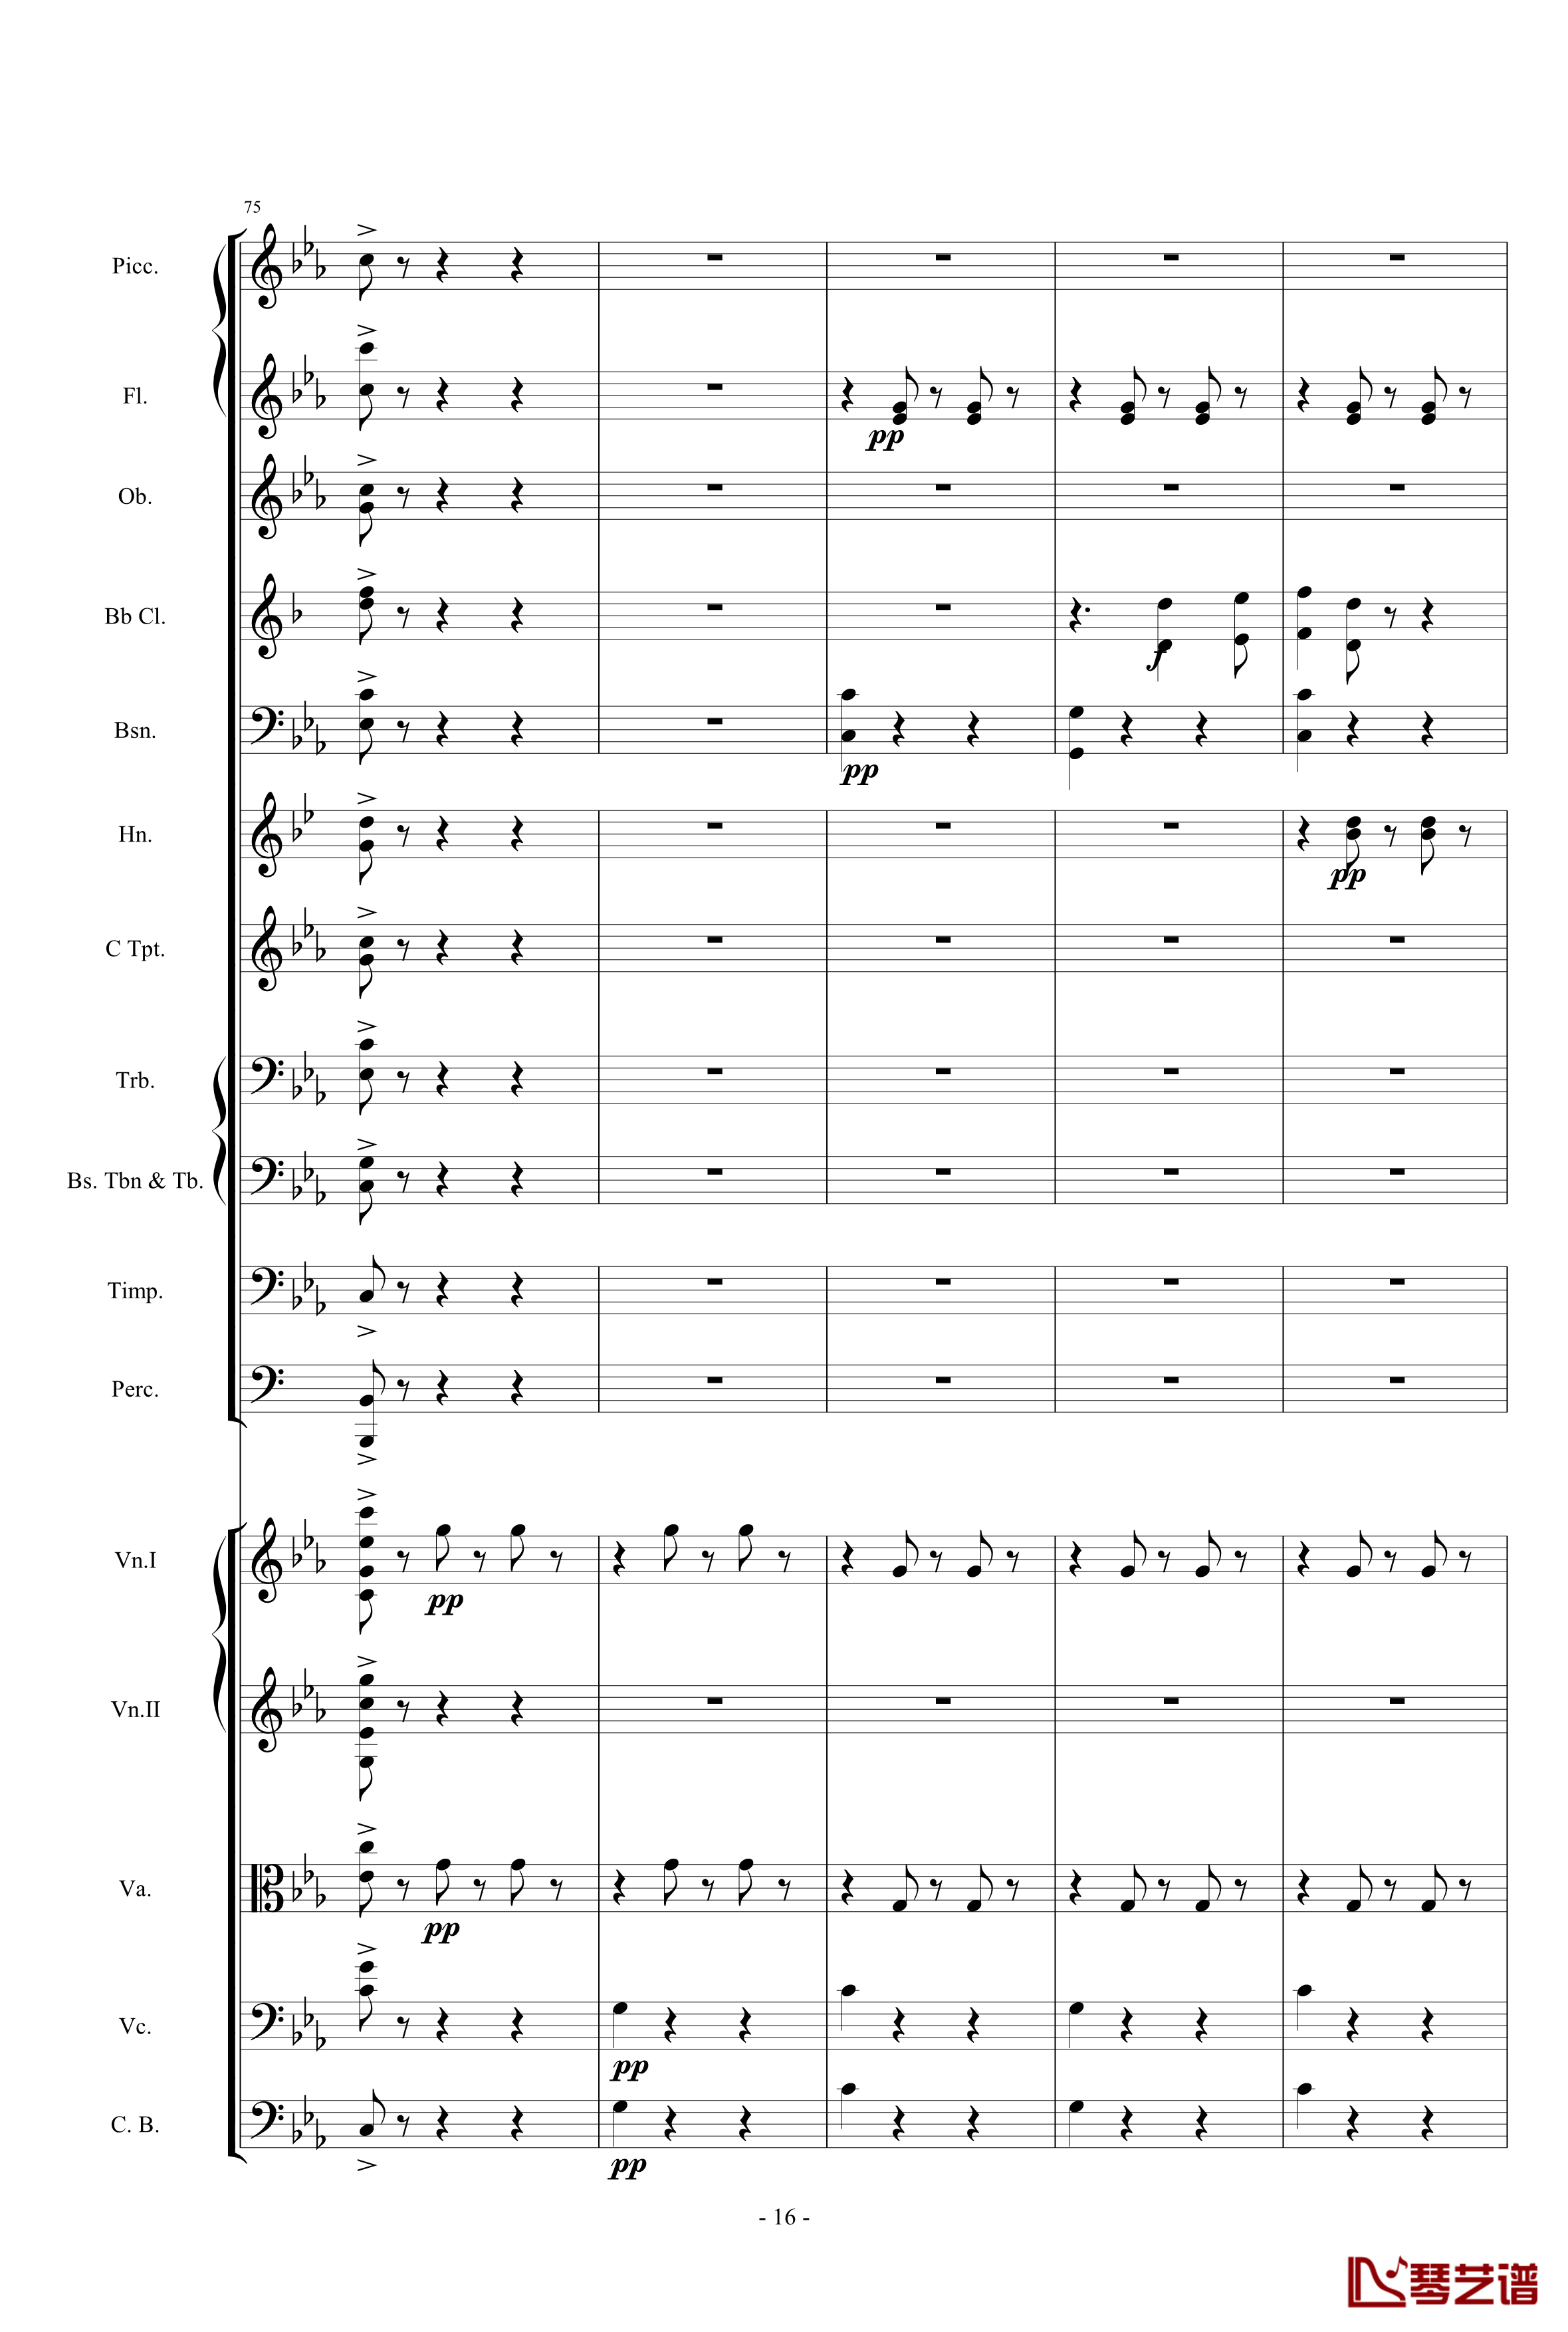 愤怒的小鸟交响曲第三乐章Op.5 no.3钢琴谱-1057257816